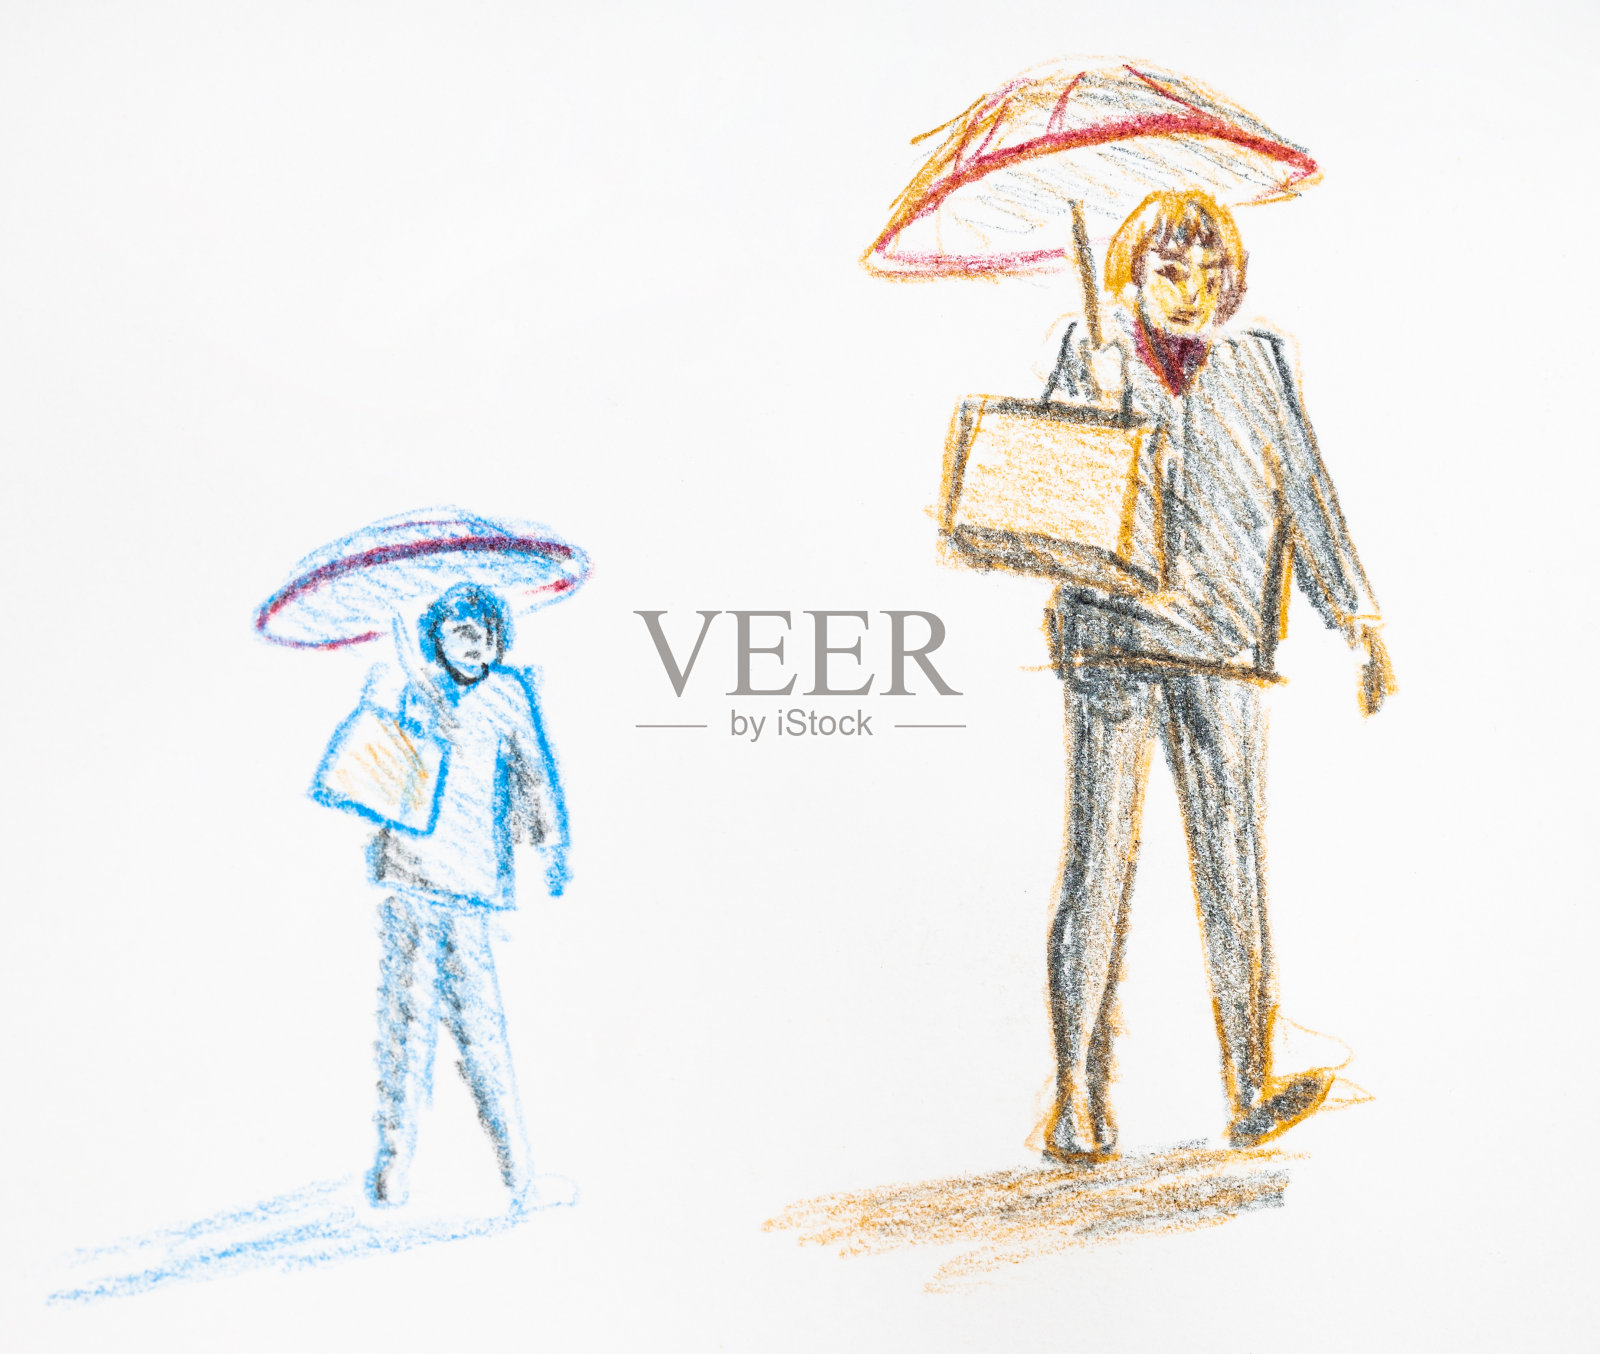 画的是一个穿着西装打着伞的女人插画图片素材